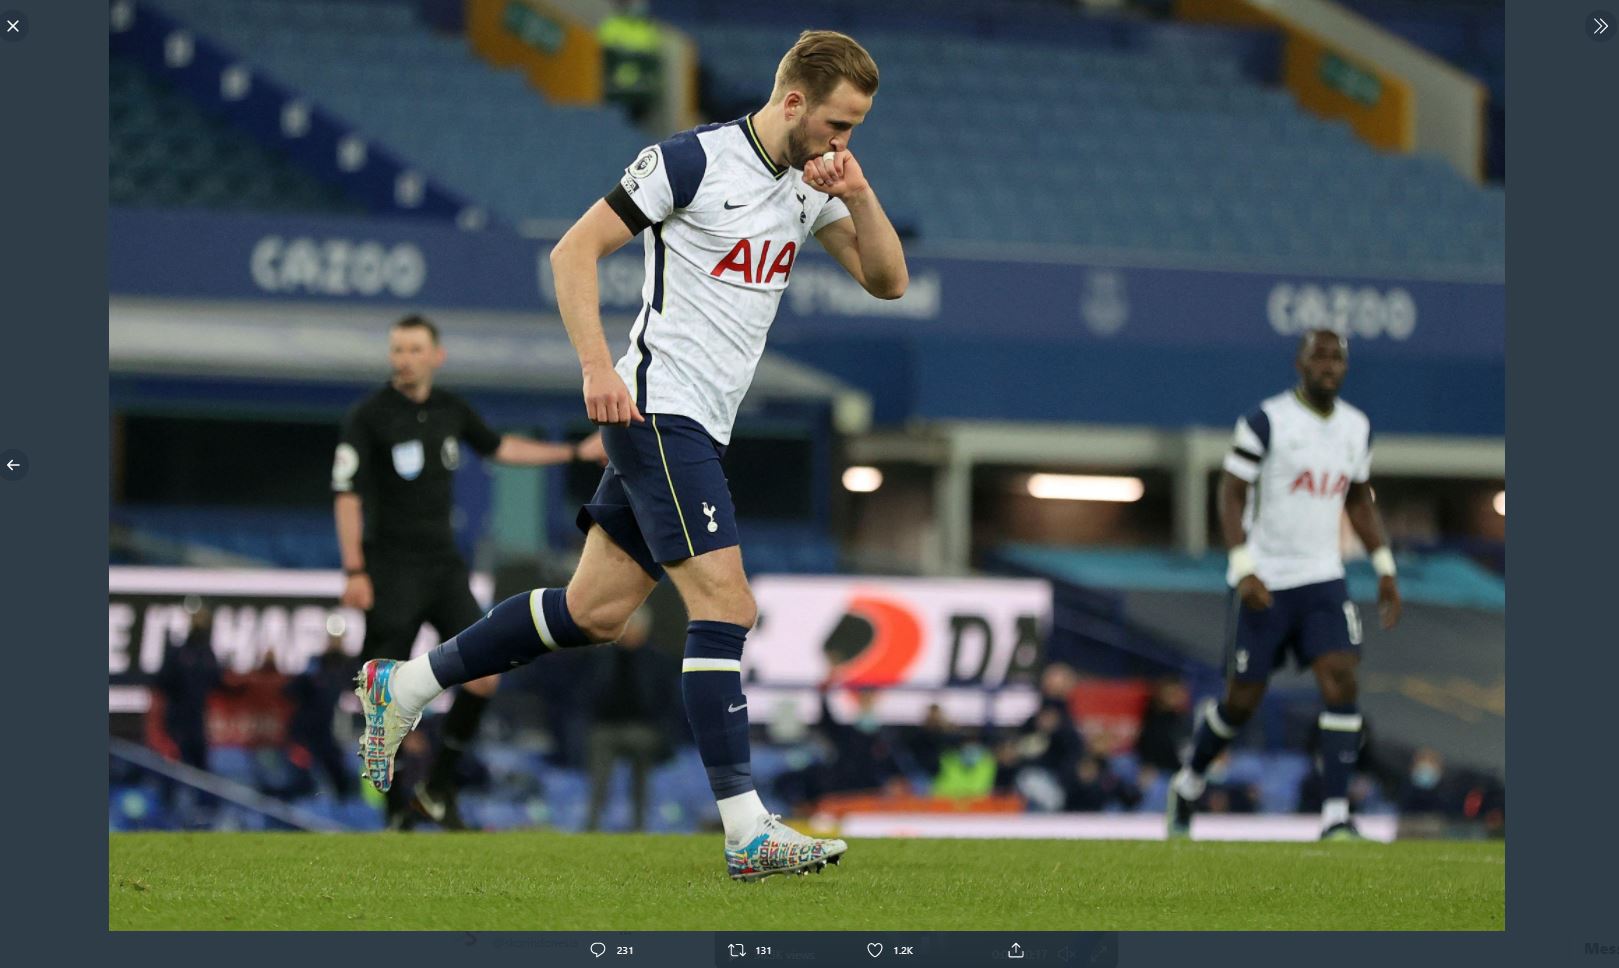 Mangkir dari Latihan Tottenham Hotspur, Harry Kane Tuai Kecaman